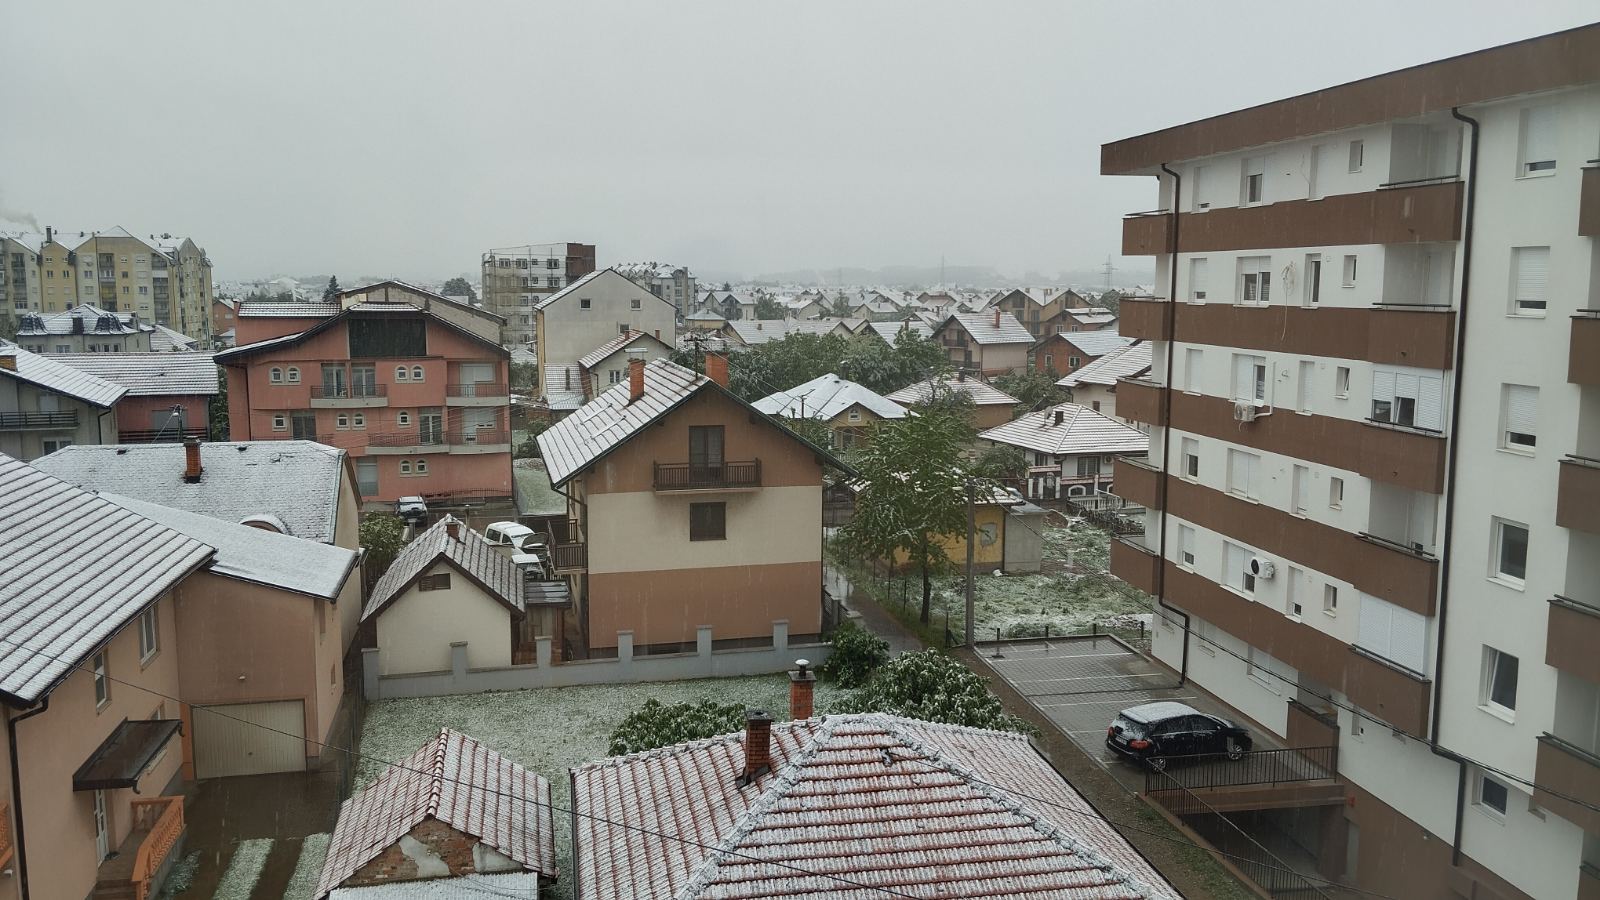 Aprilski snijeg stigao u Semberiju: Narodno vjerovanje otkriva šta nas čeka